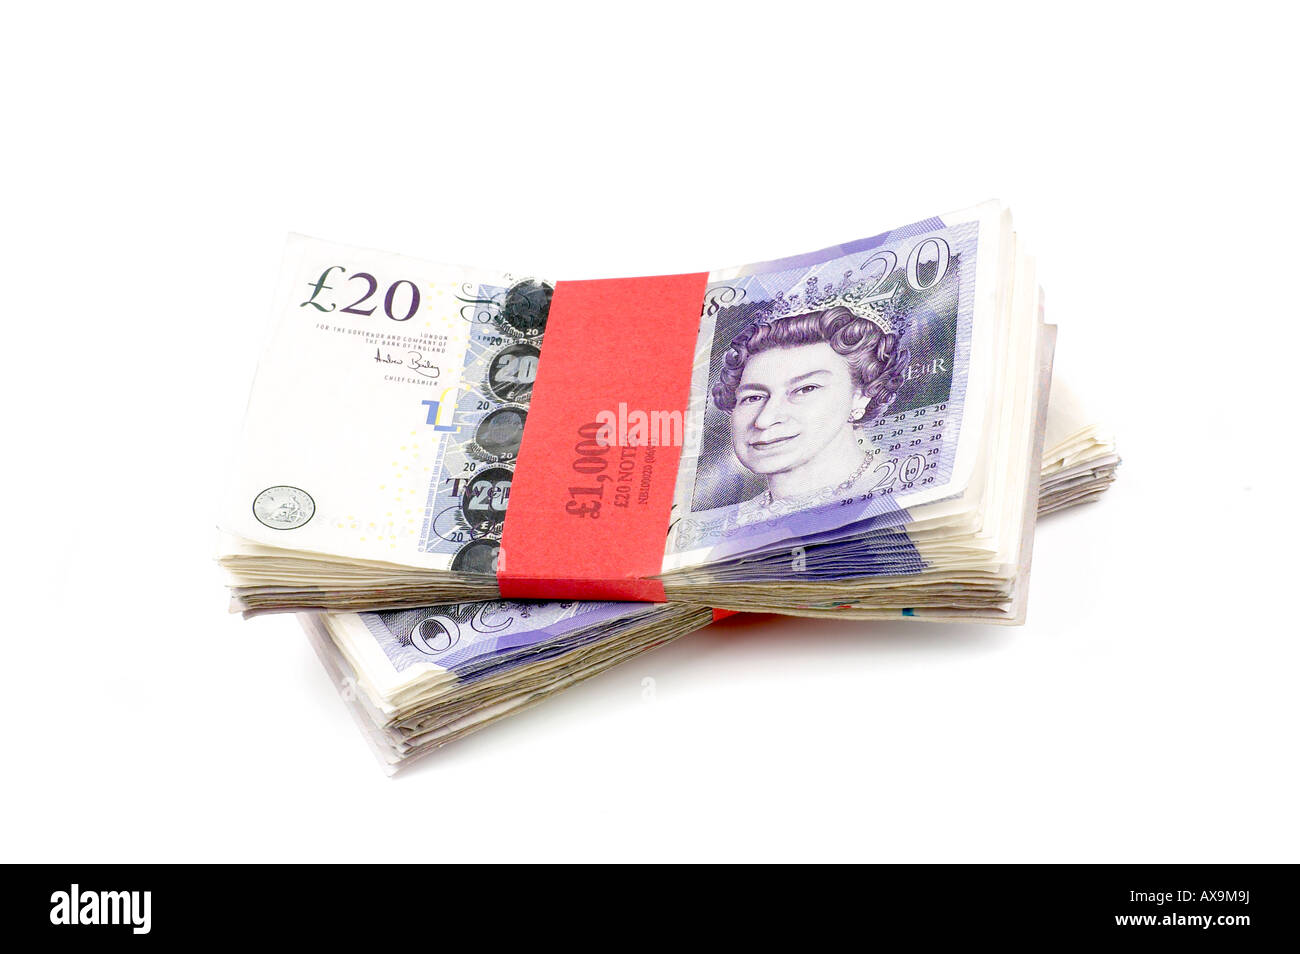 BÜNDEL VON ENGLISCHEN £20 PFUND STERLING NOTIZEN, CASH MONEY UK Stockfoto